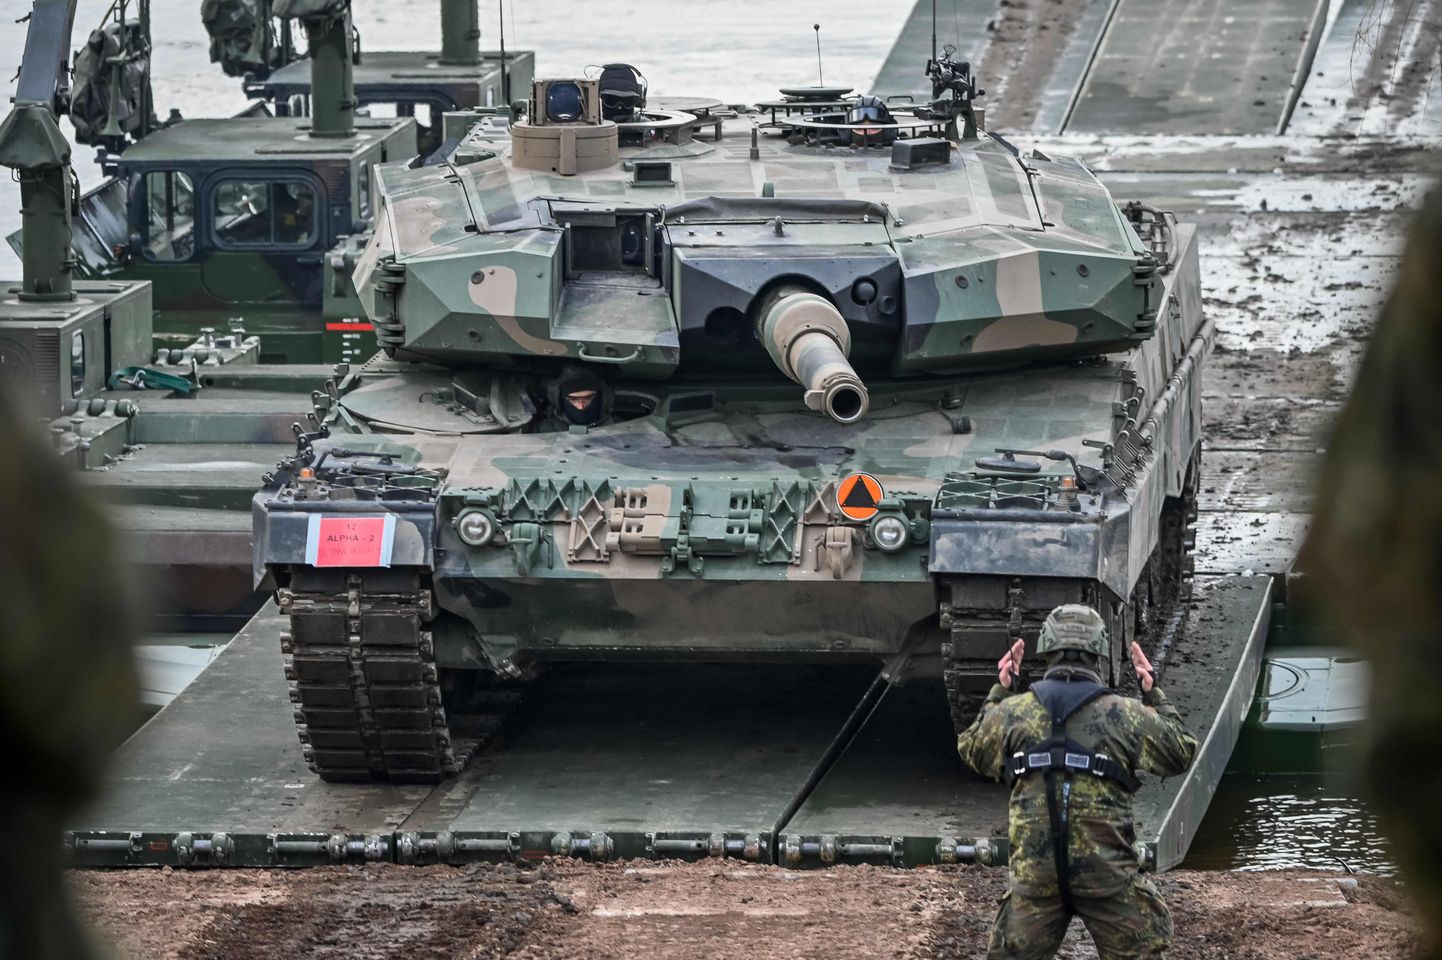 Leopard 2A4 tank.